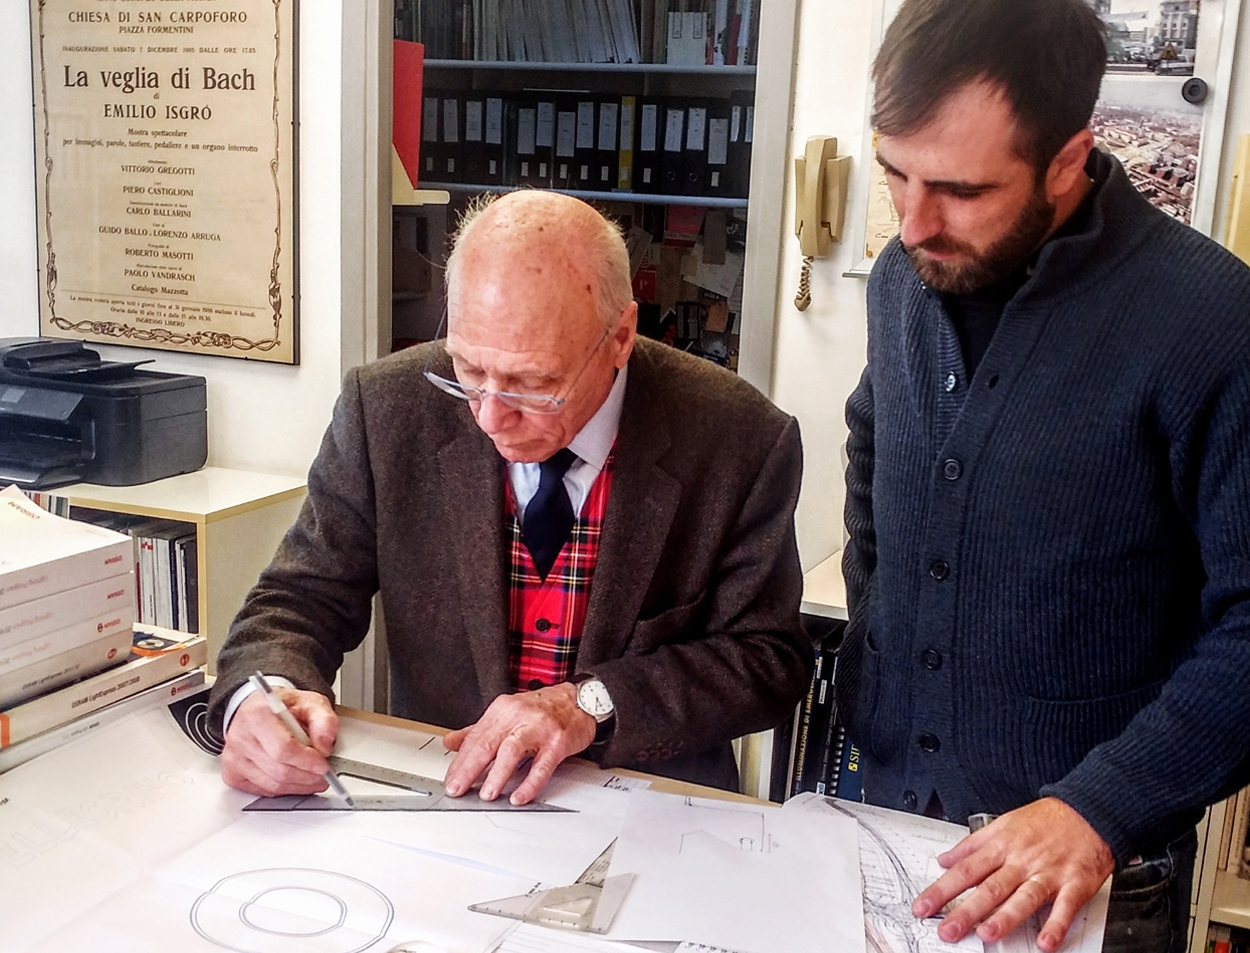 Marco Pertucci & Piero Castiglioni at work